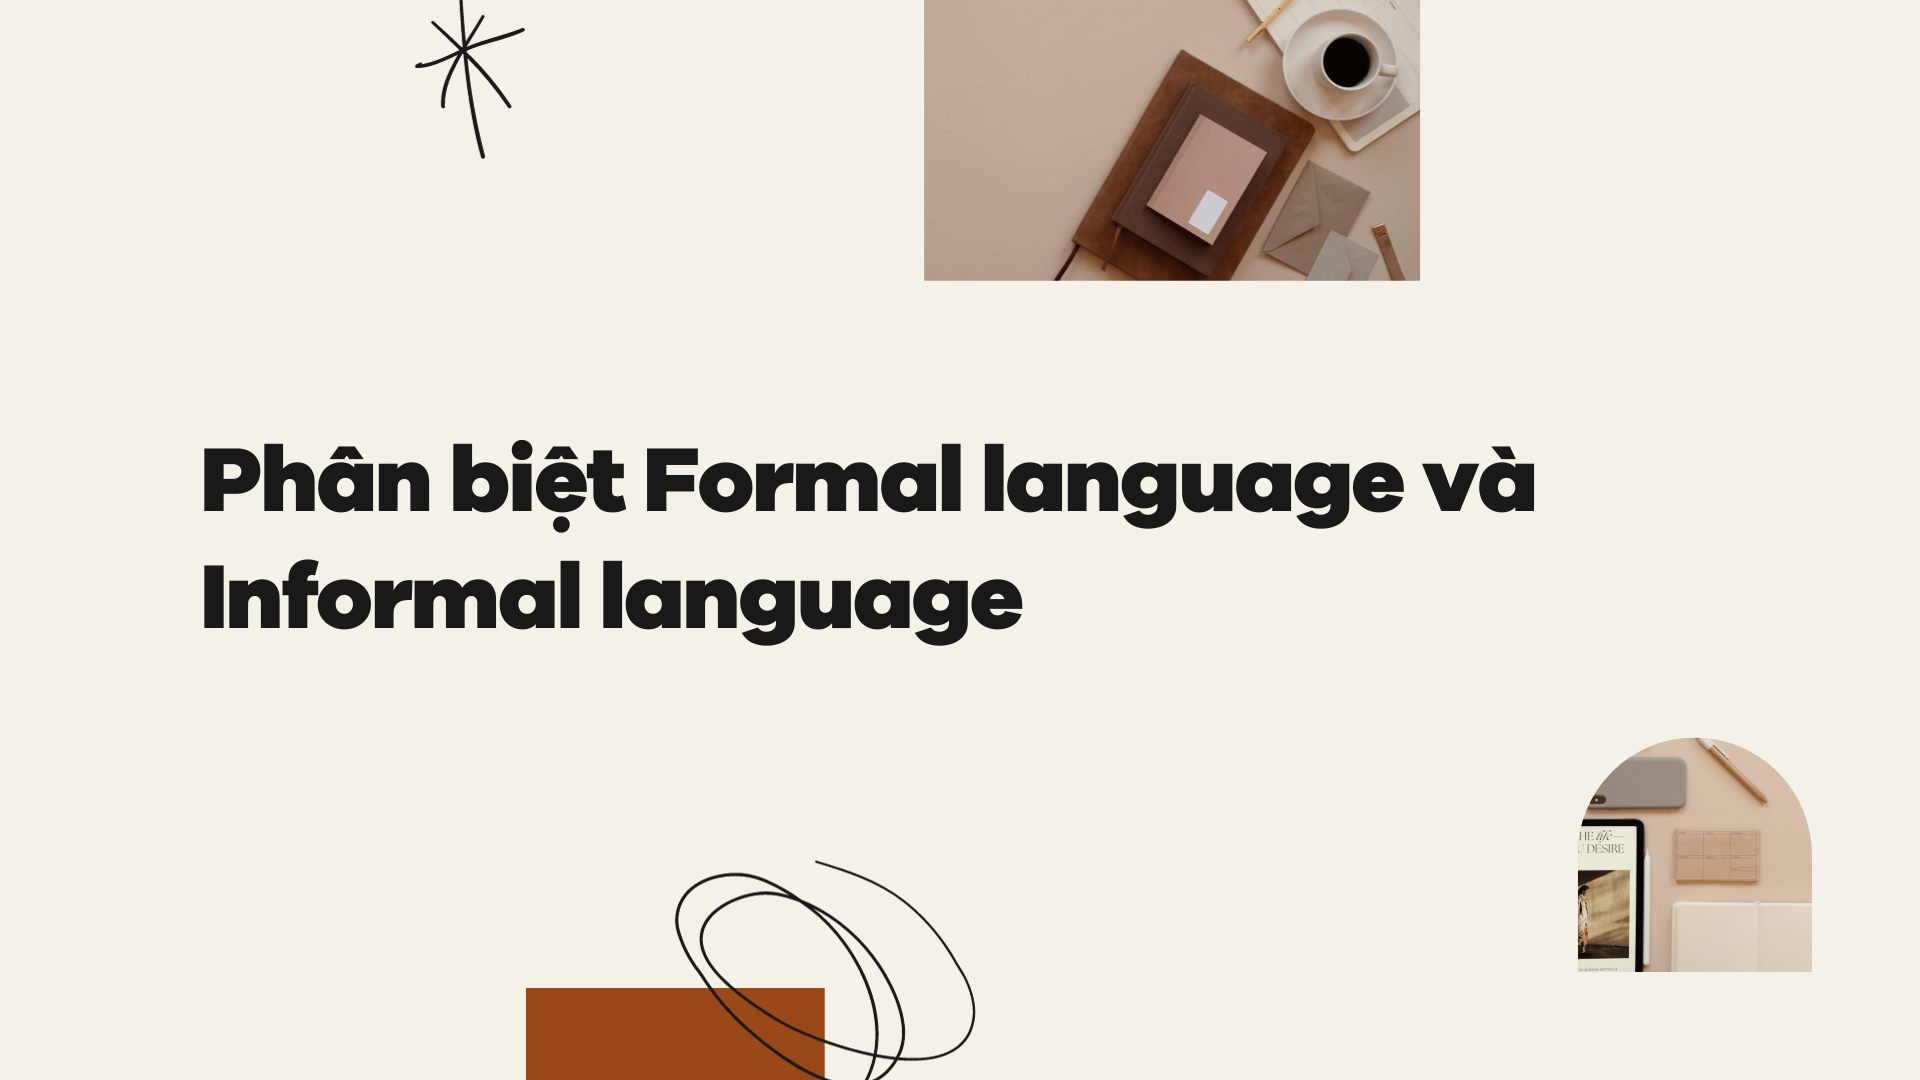 Phân biệt Formal language và Informal language